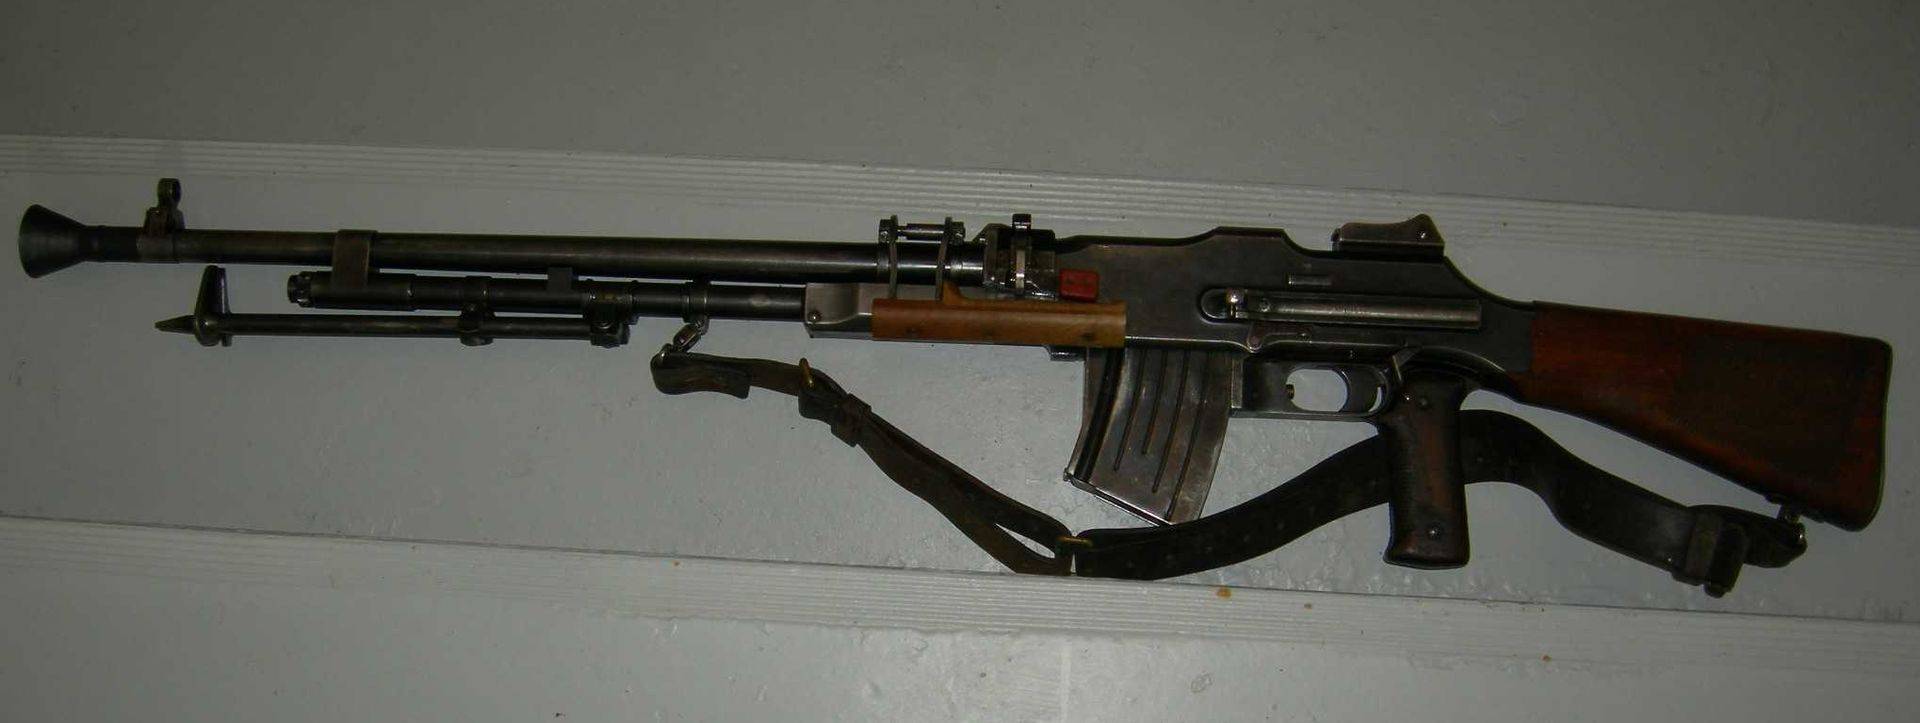 原创虽名为自动步枪但在使用时却作为轻机枪使用的勃朗宁自动步枪